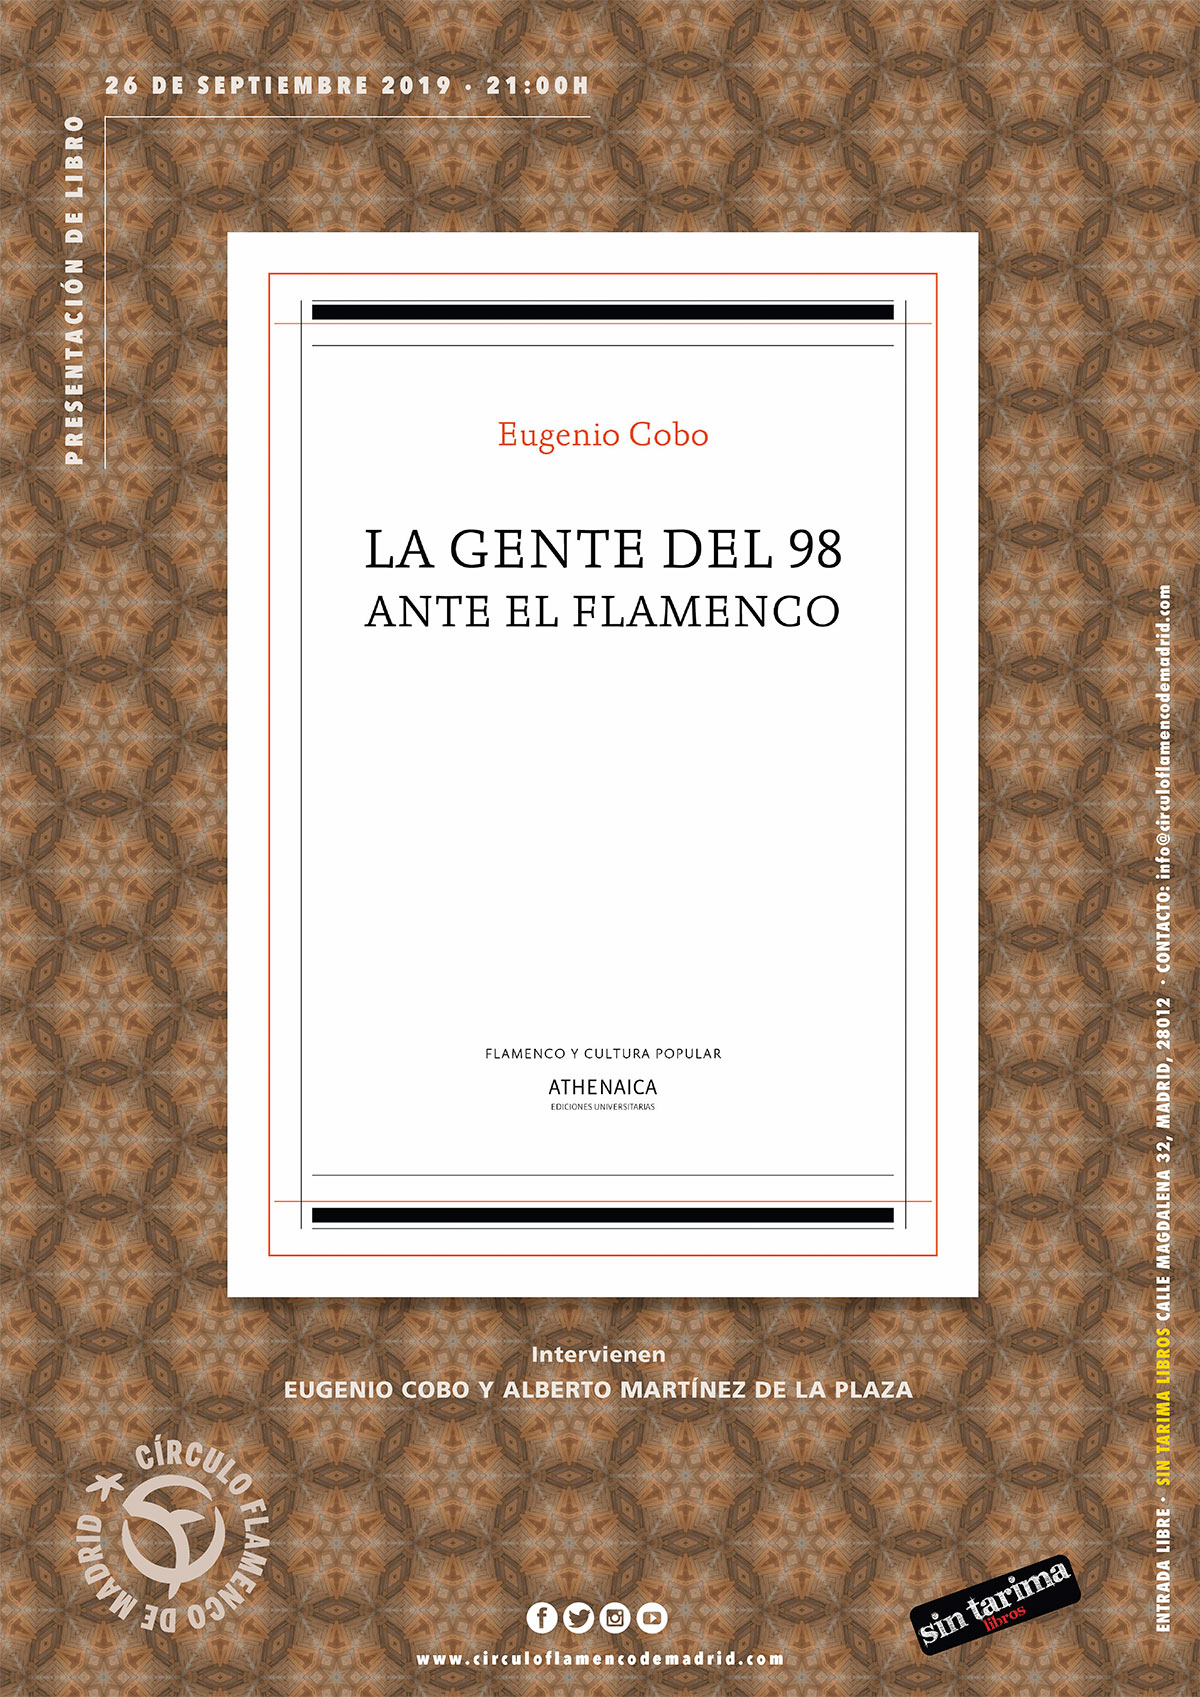 Presenteción - La gente del 98 ante el flamenco